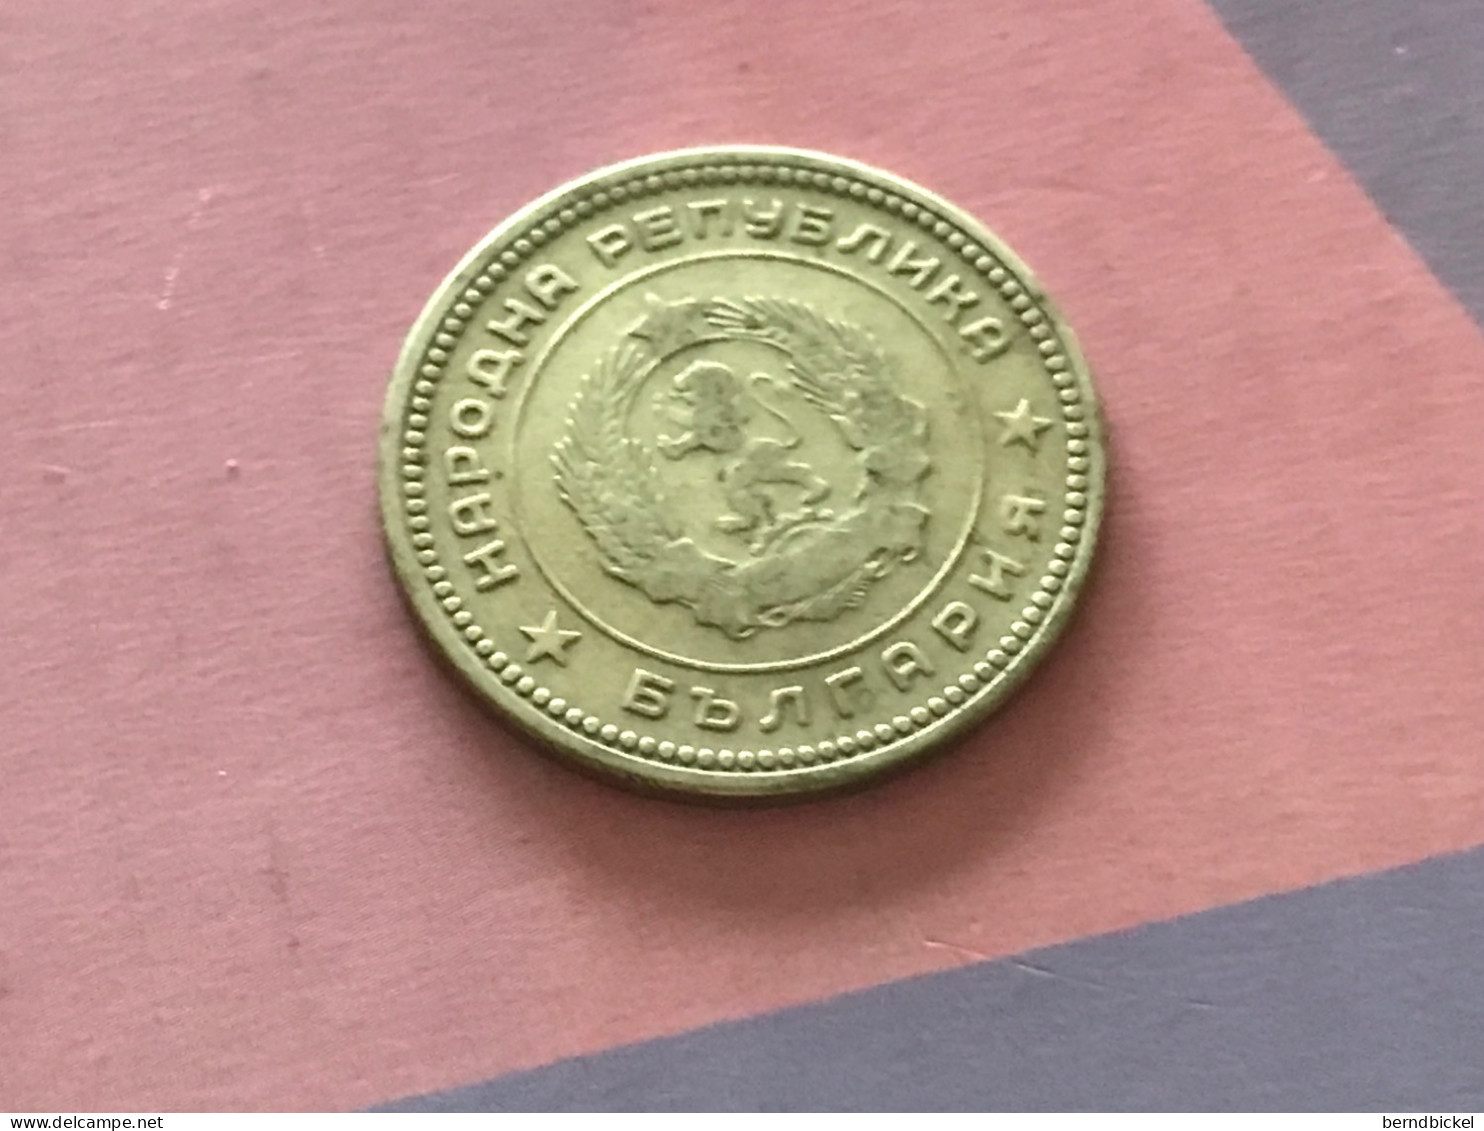 Münze Münzen Umlaufmünze Bulgarien 20 Stotinki 1962 - Bulgarie